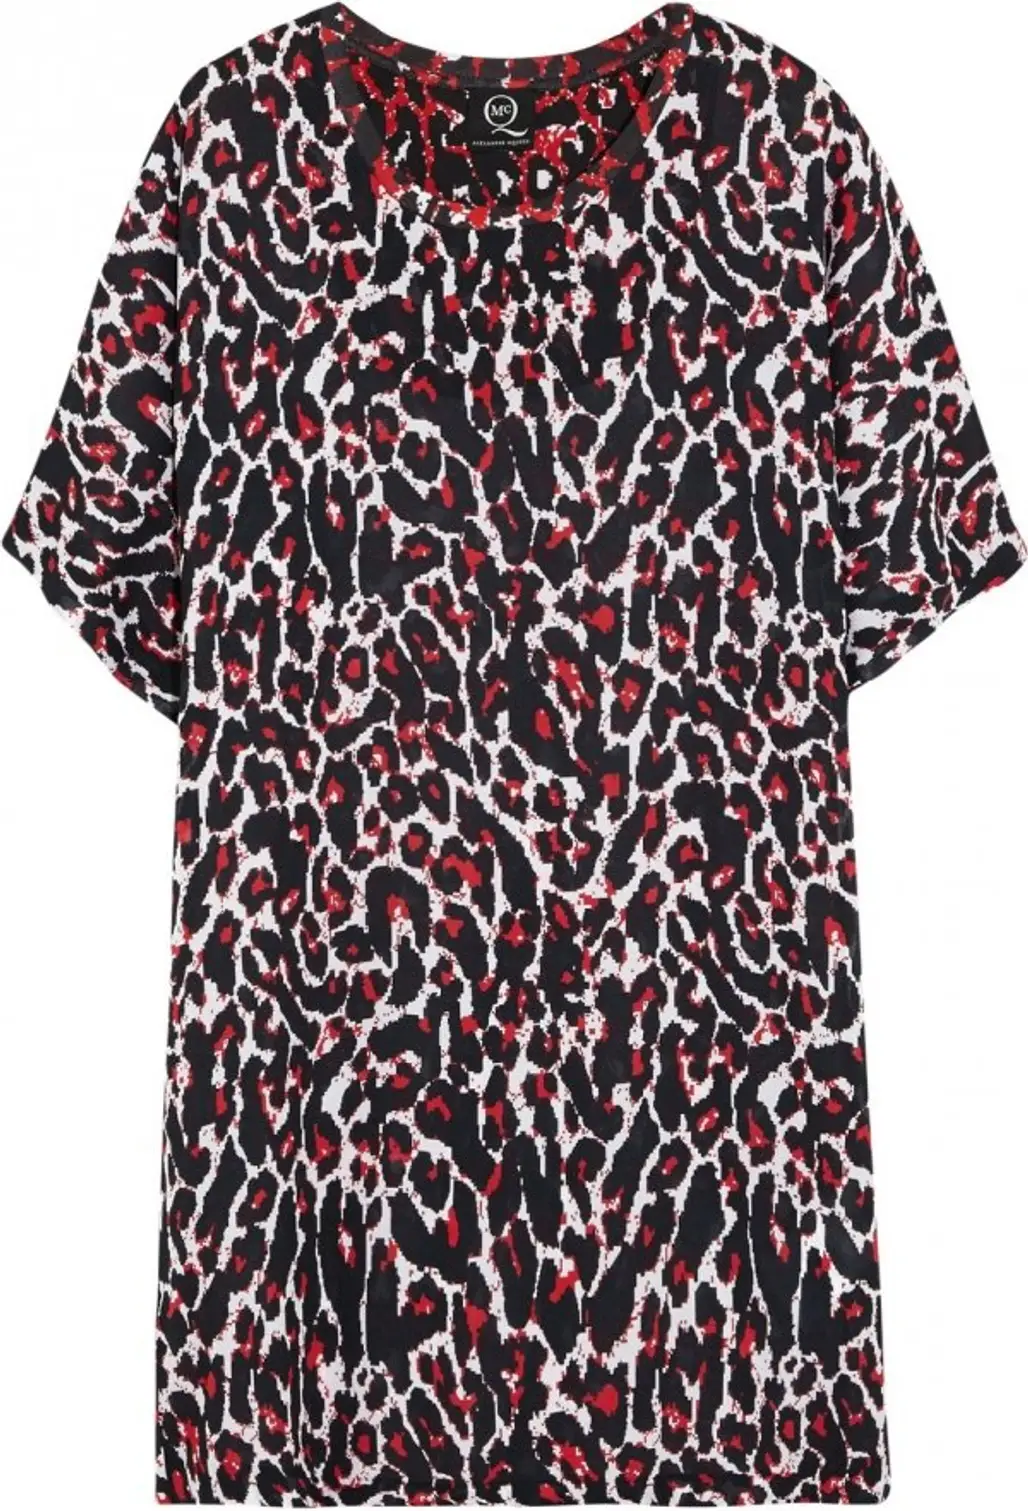 McQ Alexander McQueen Leopard Print Dress